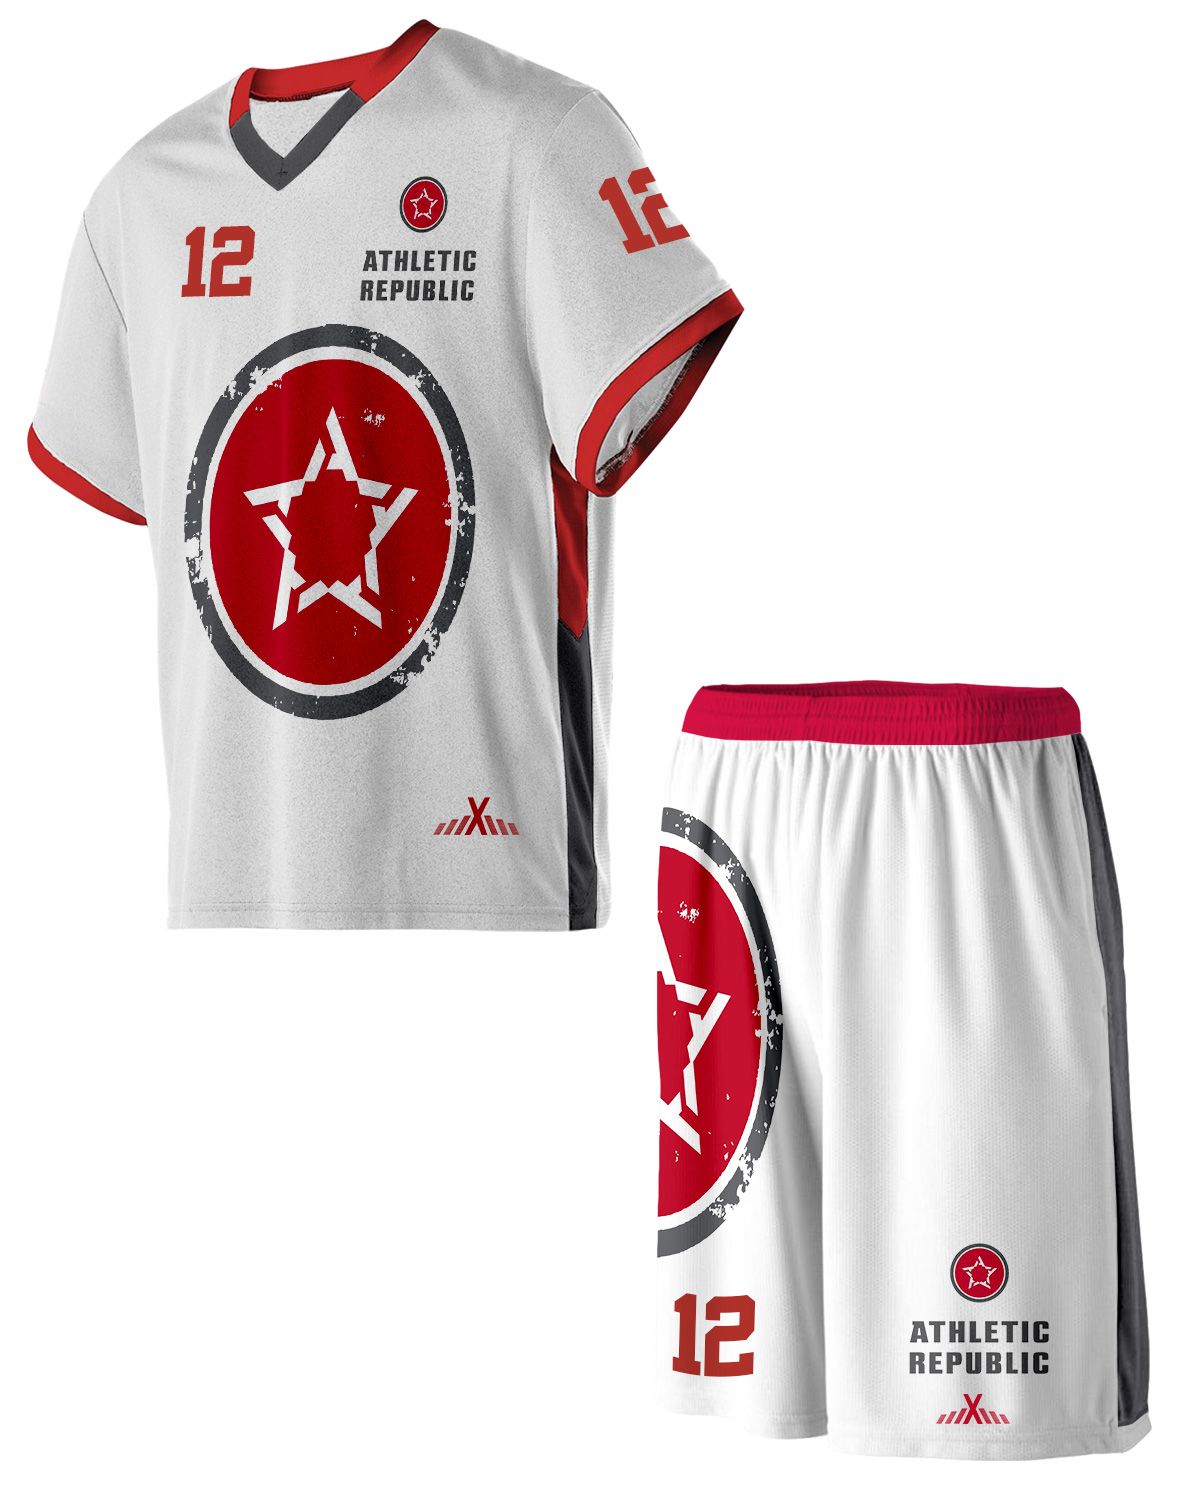 Shop Custom Lacrosse Jerseys & Uniforms for Men & Women